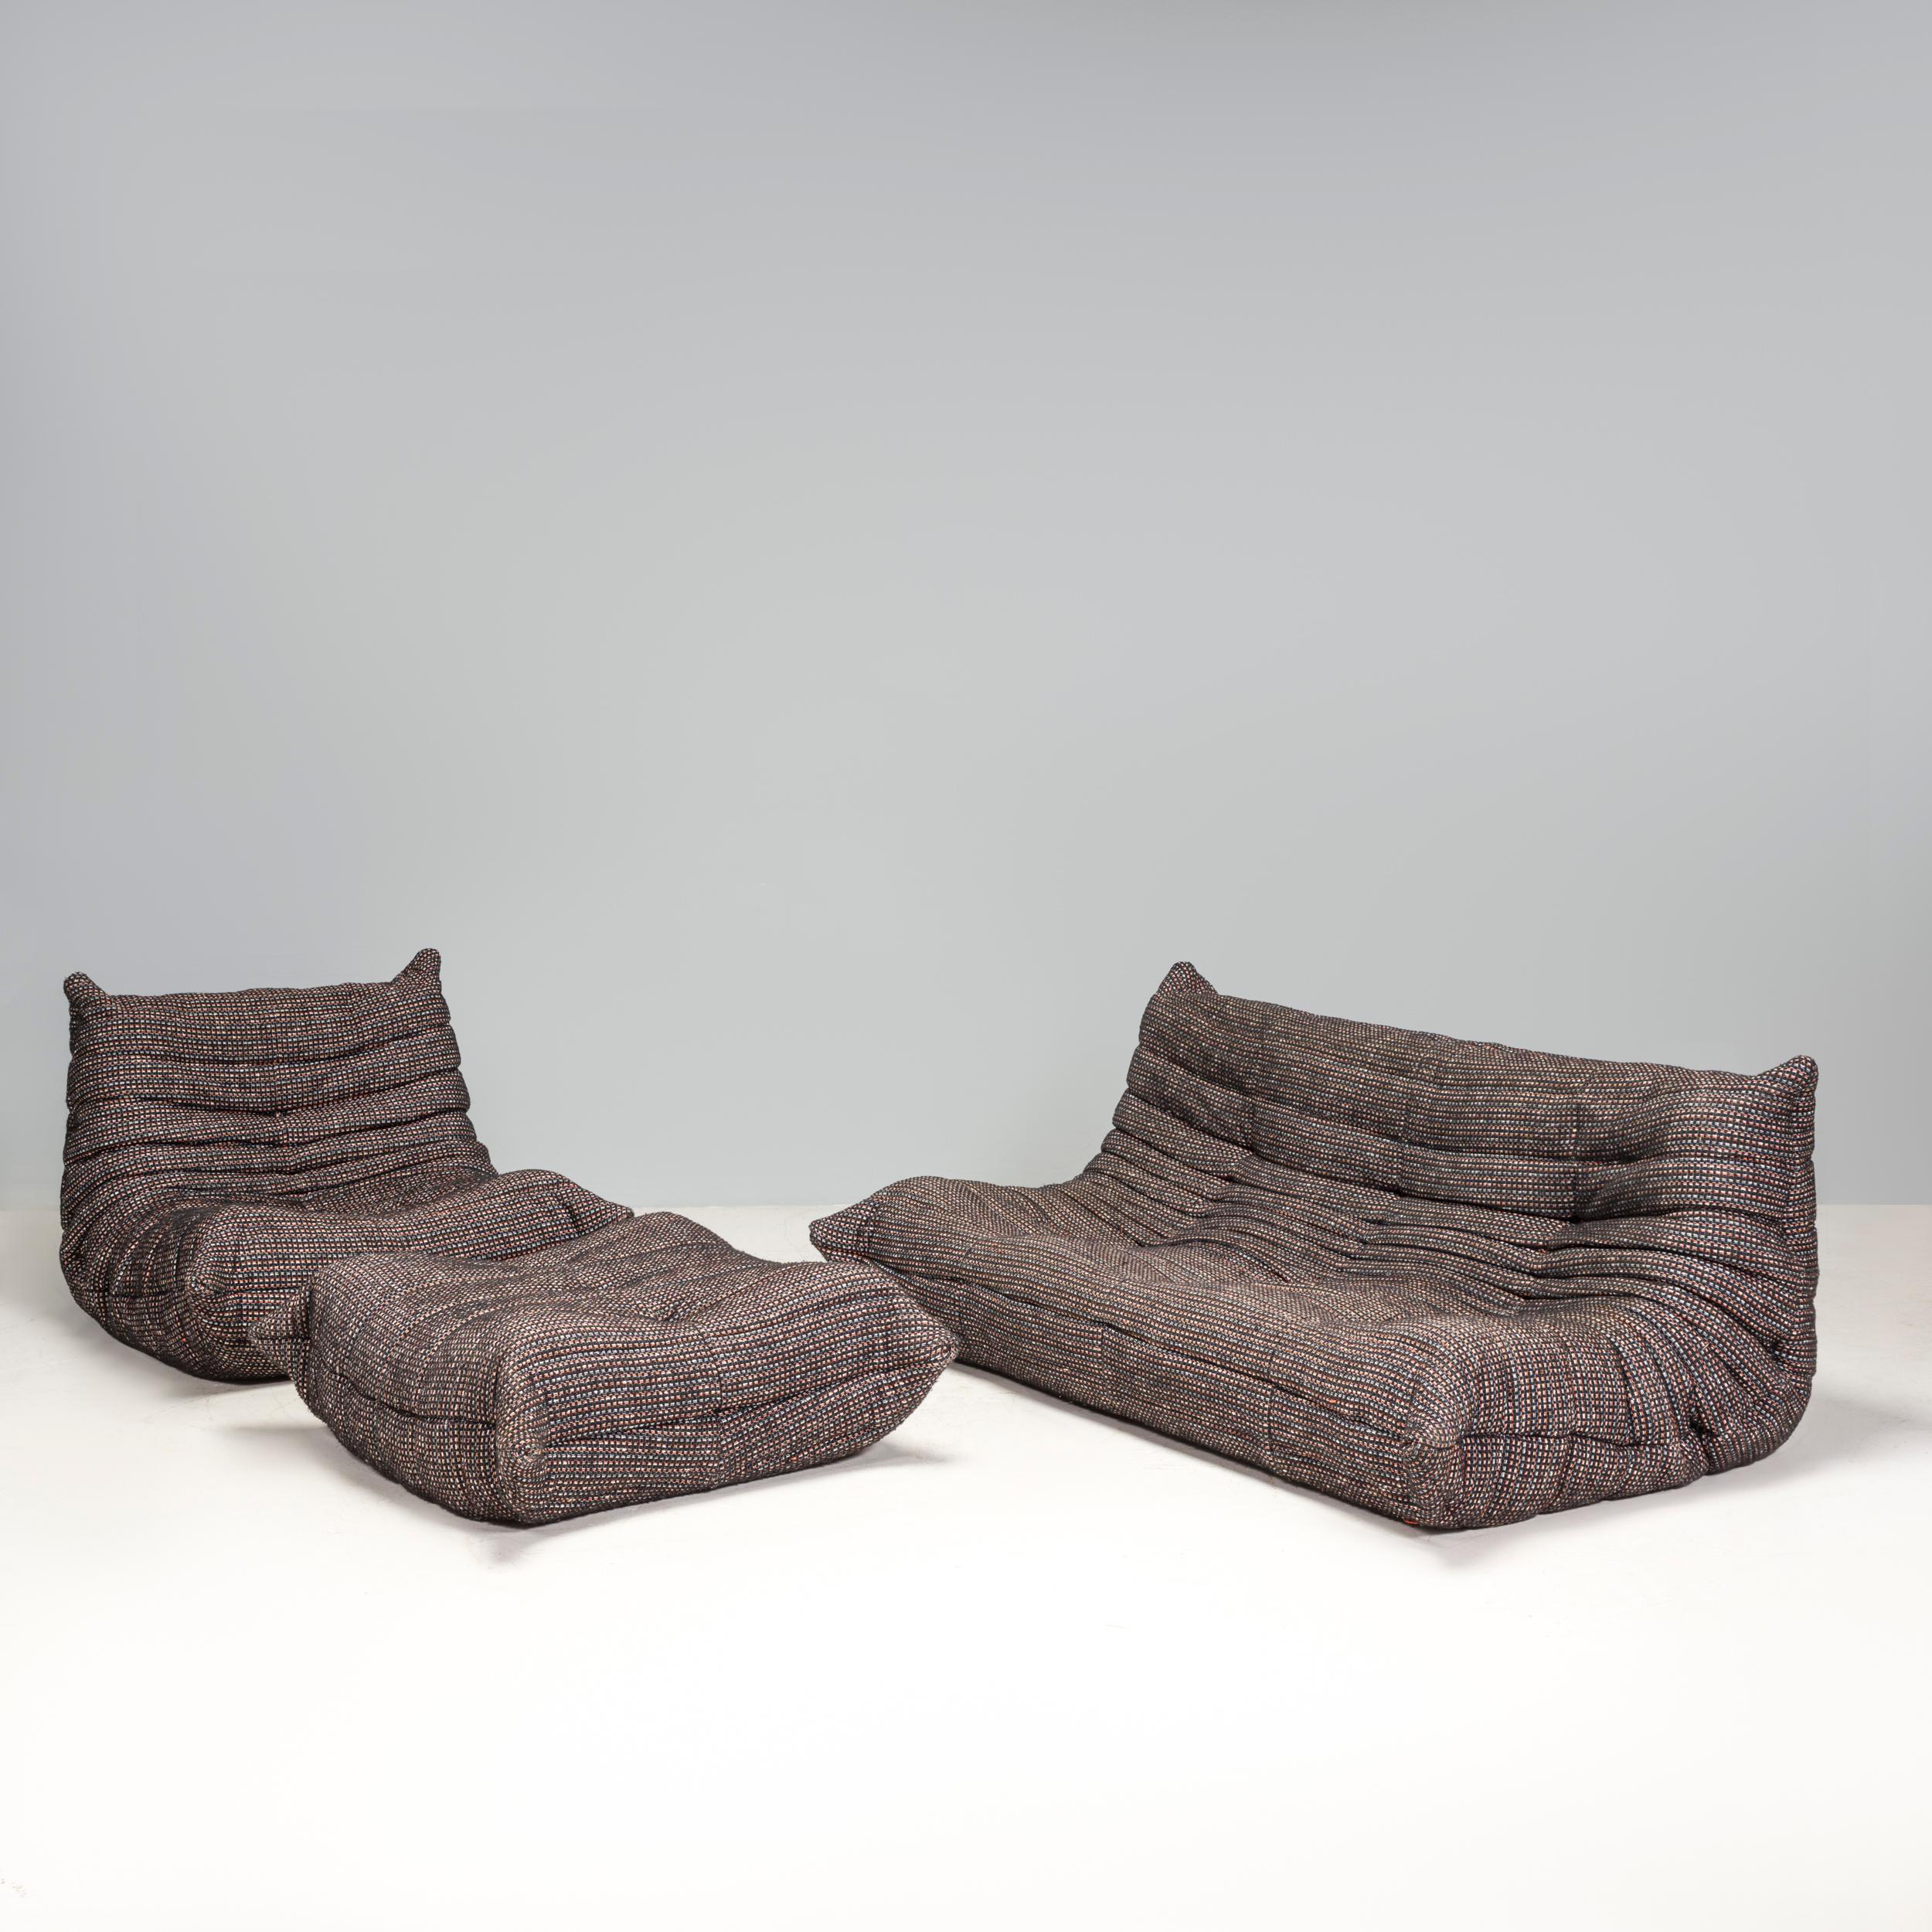 Das ikonische Sofa Togo, ursprünglich von Michel Ducaroy für Ligne Roset im Jahr 1973 entworfen, ist zu einem Designklassiker geworden.

Dieses dreiteilige modulare Set ist unglaublich vielseitig und kann zu einem großen Ecksofa konfiguriert oder